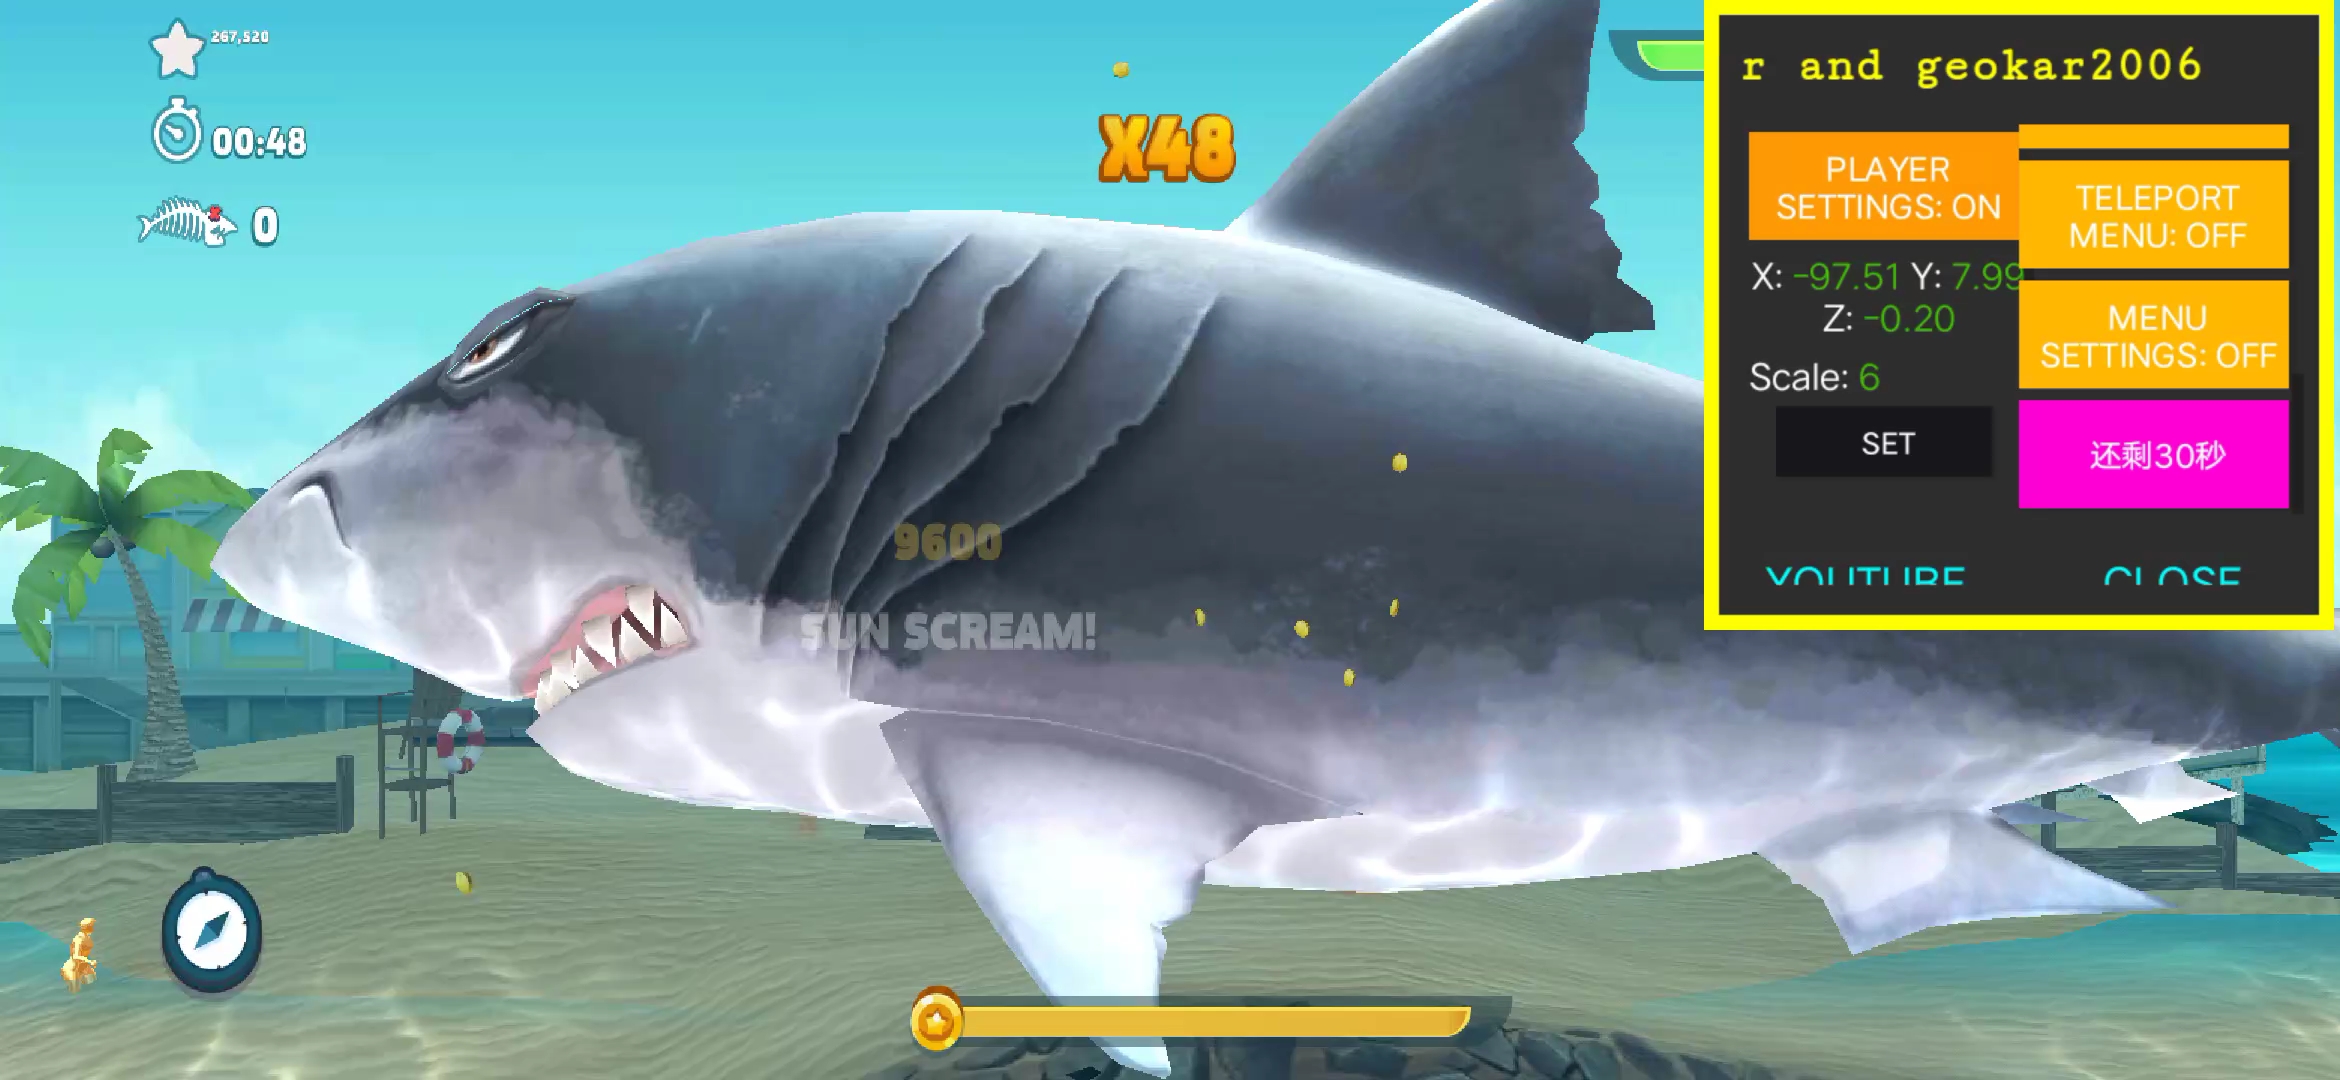 饥饿鲨古巨齿鲨图片图片